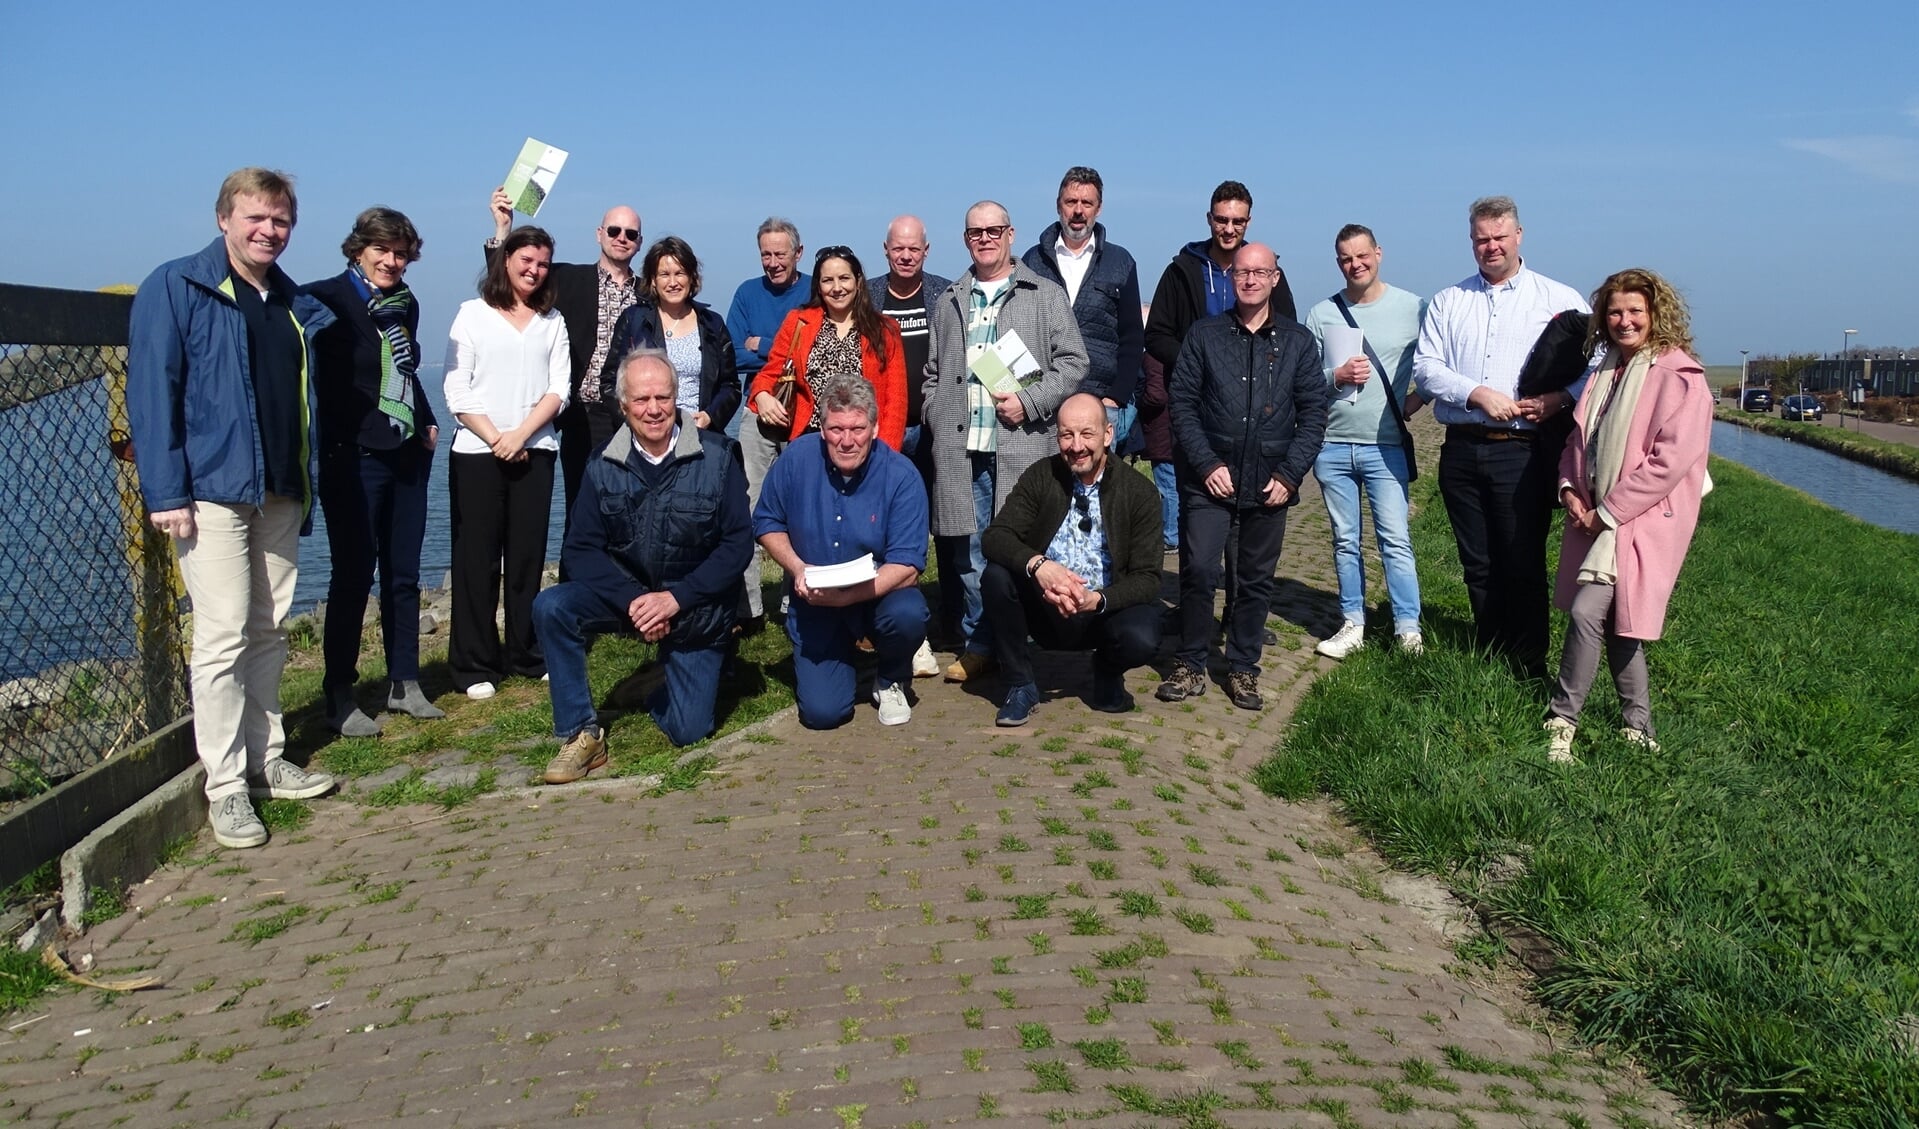  De nieuwe raadsleden van de gemeenteraad van Waterland, inclusief burgemeester, griffier en algemeen directeur, waren zaterdag op bezoek op Marken. 